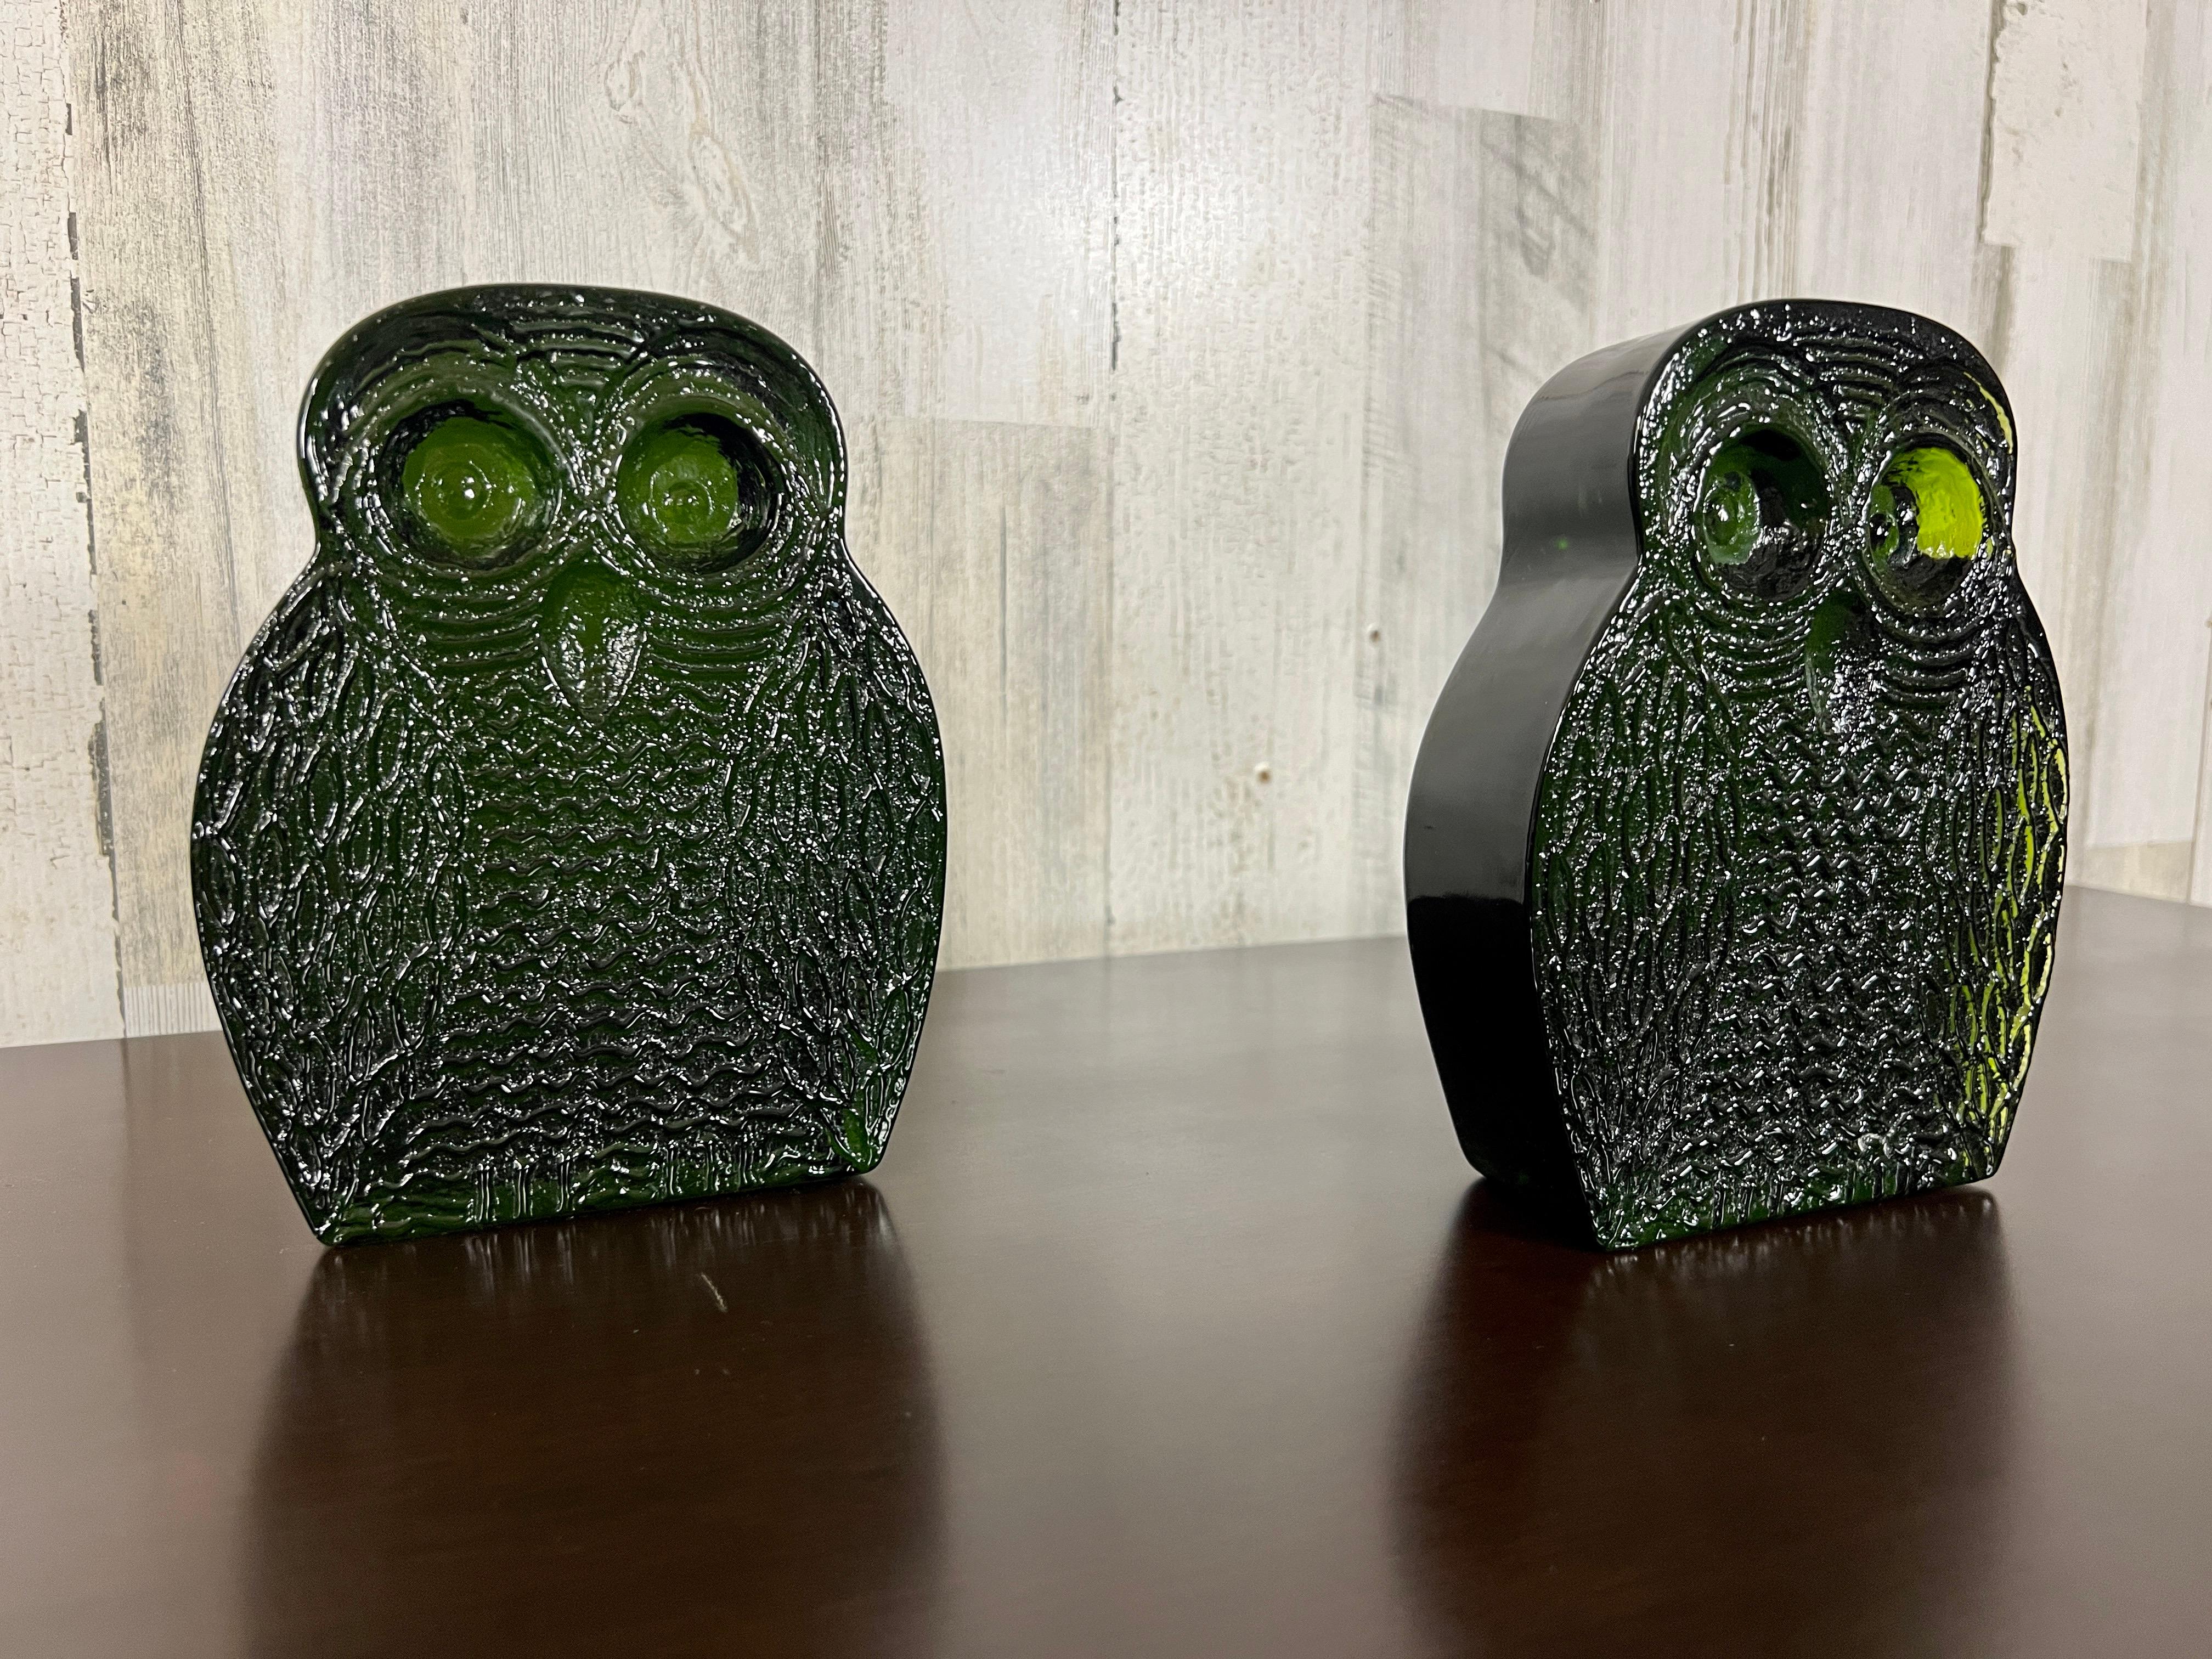 blenko glass owl bookends